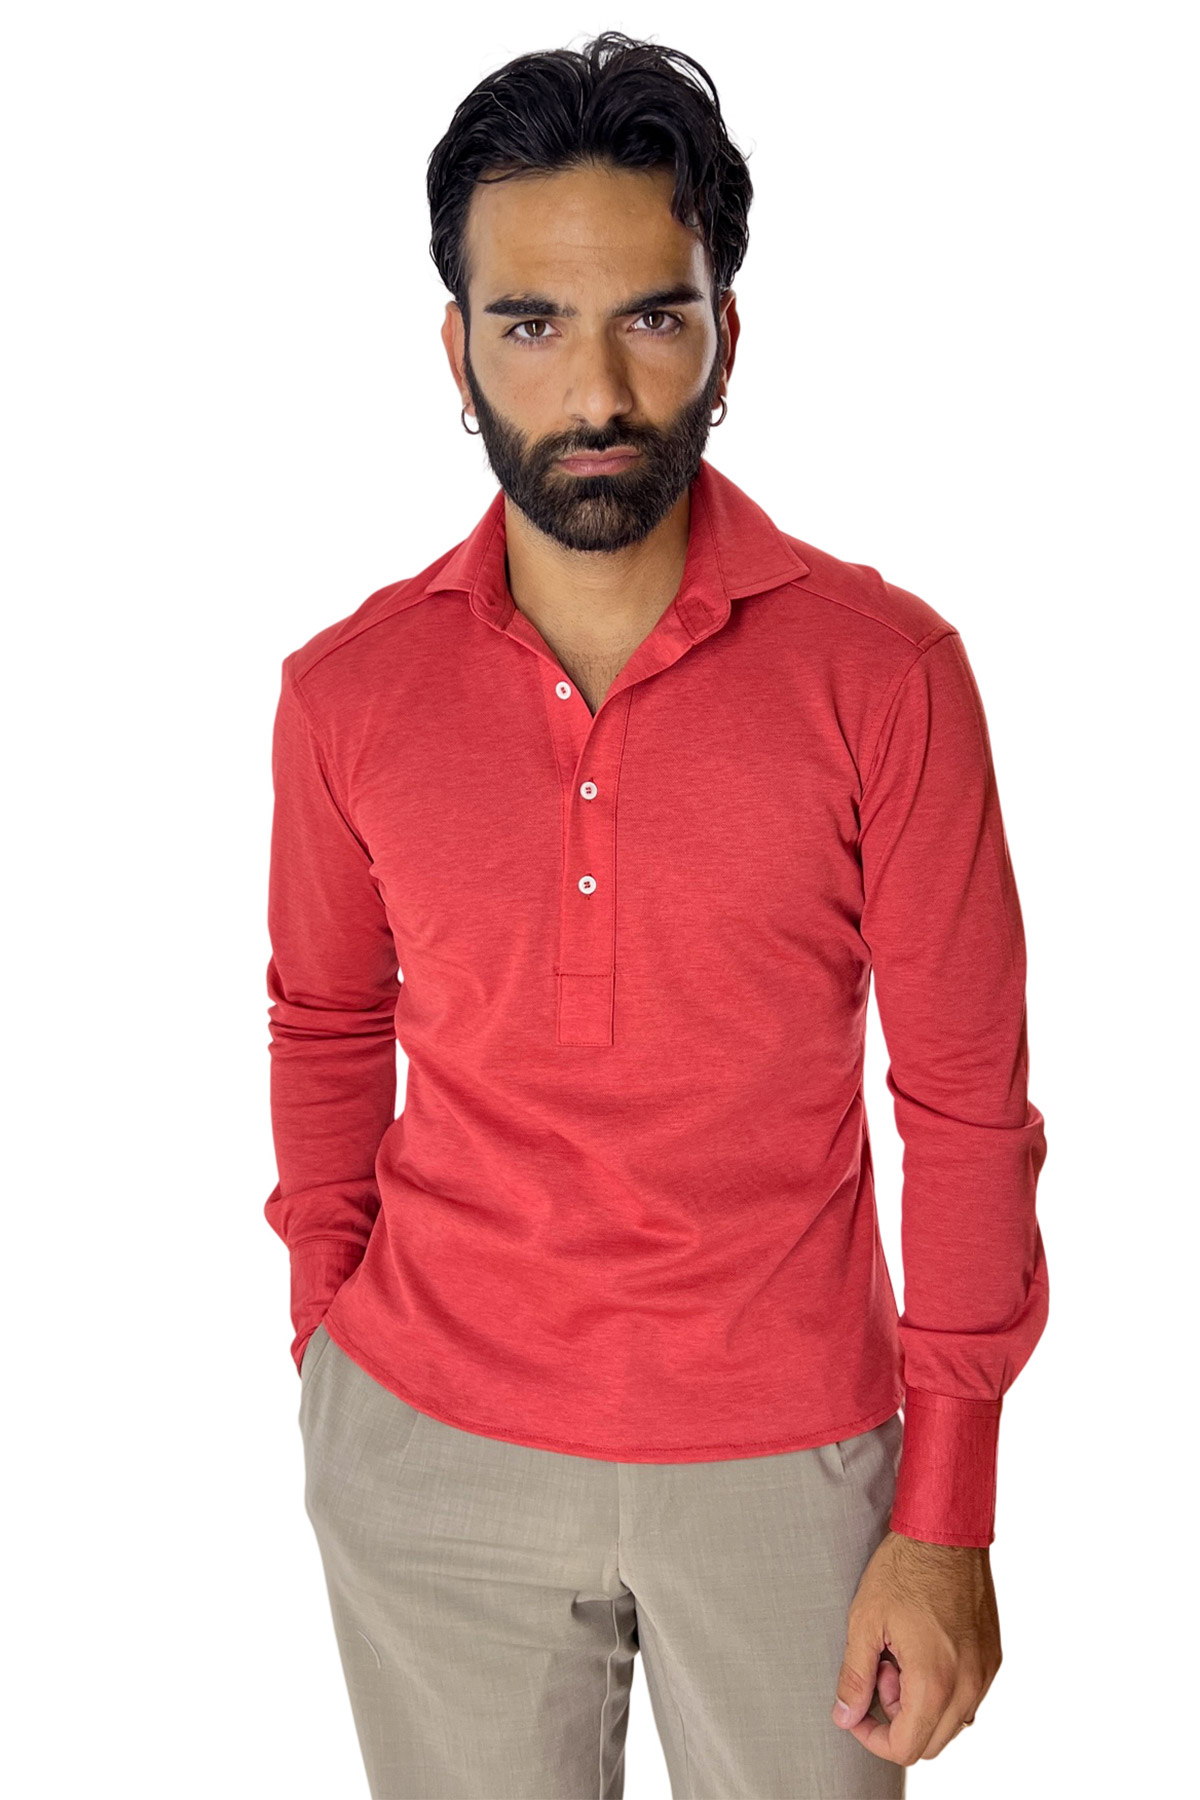 Polo camicia da uomo rossa trattamento stone wash manica lunga in piquet cotone 100% Canclini